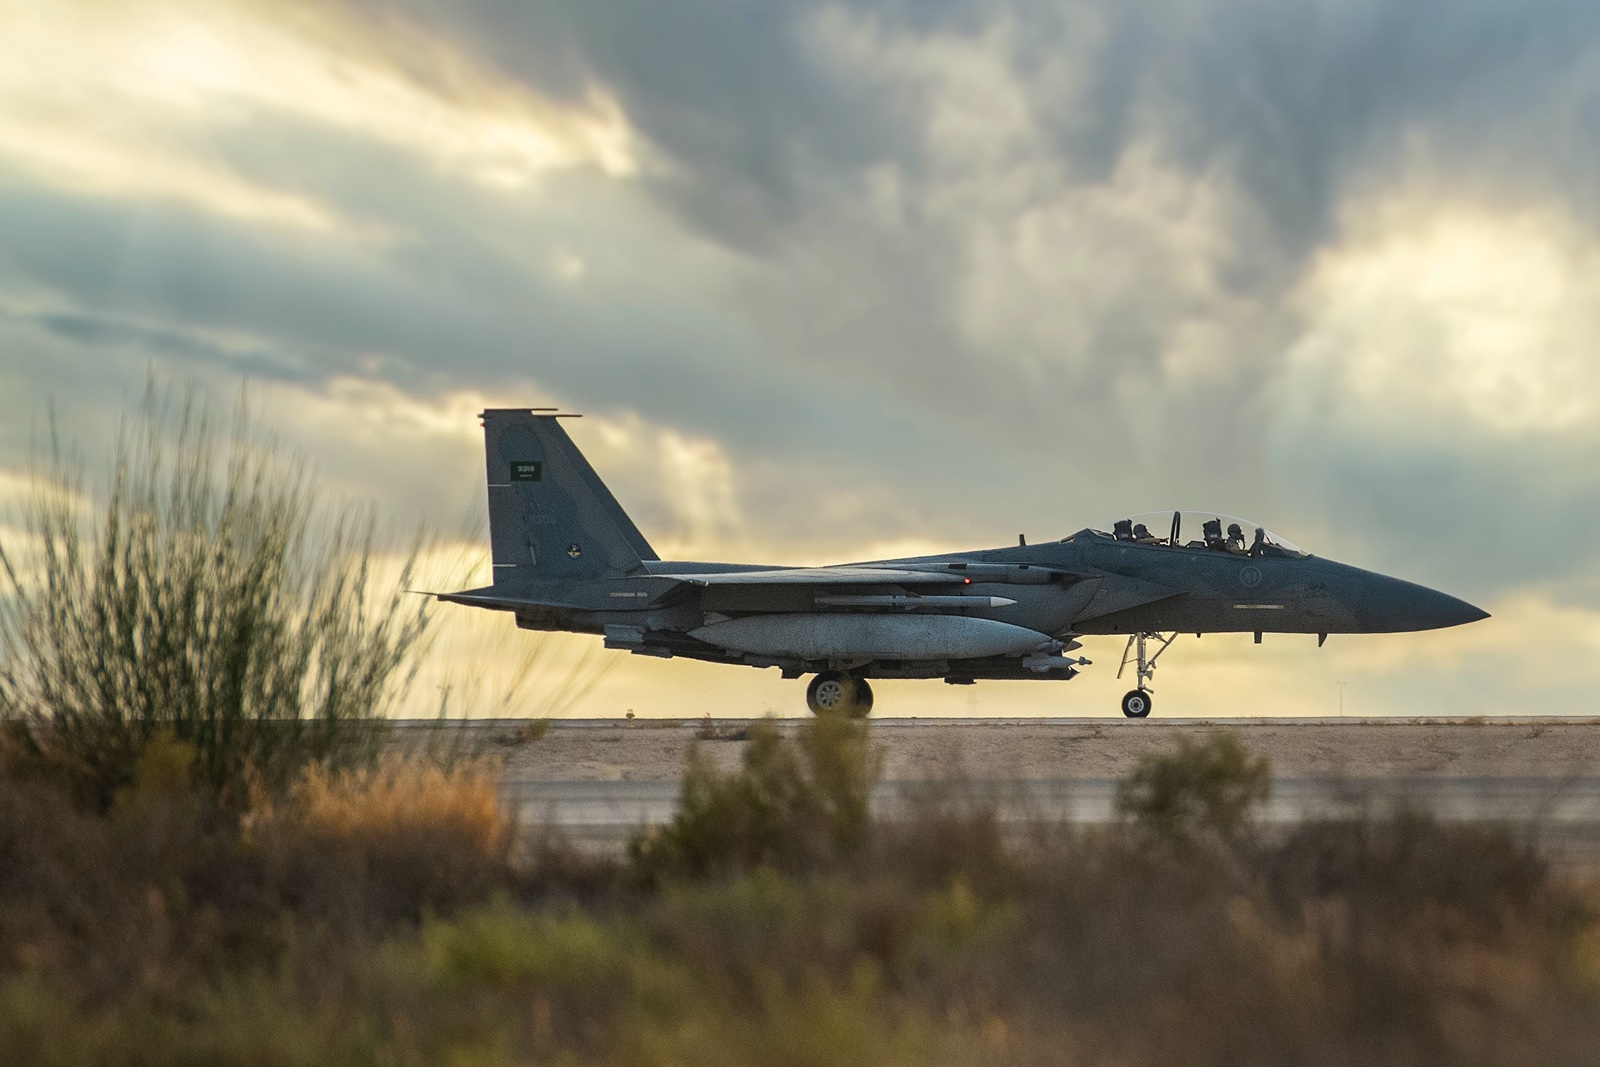 F16 Τουρκία: Πέρασε στις ΗΠΑ η πρώτη τροπολογία για το μπλόκο